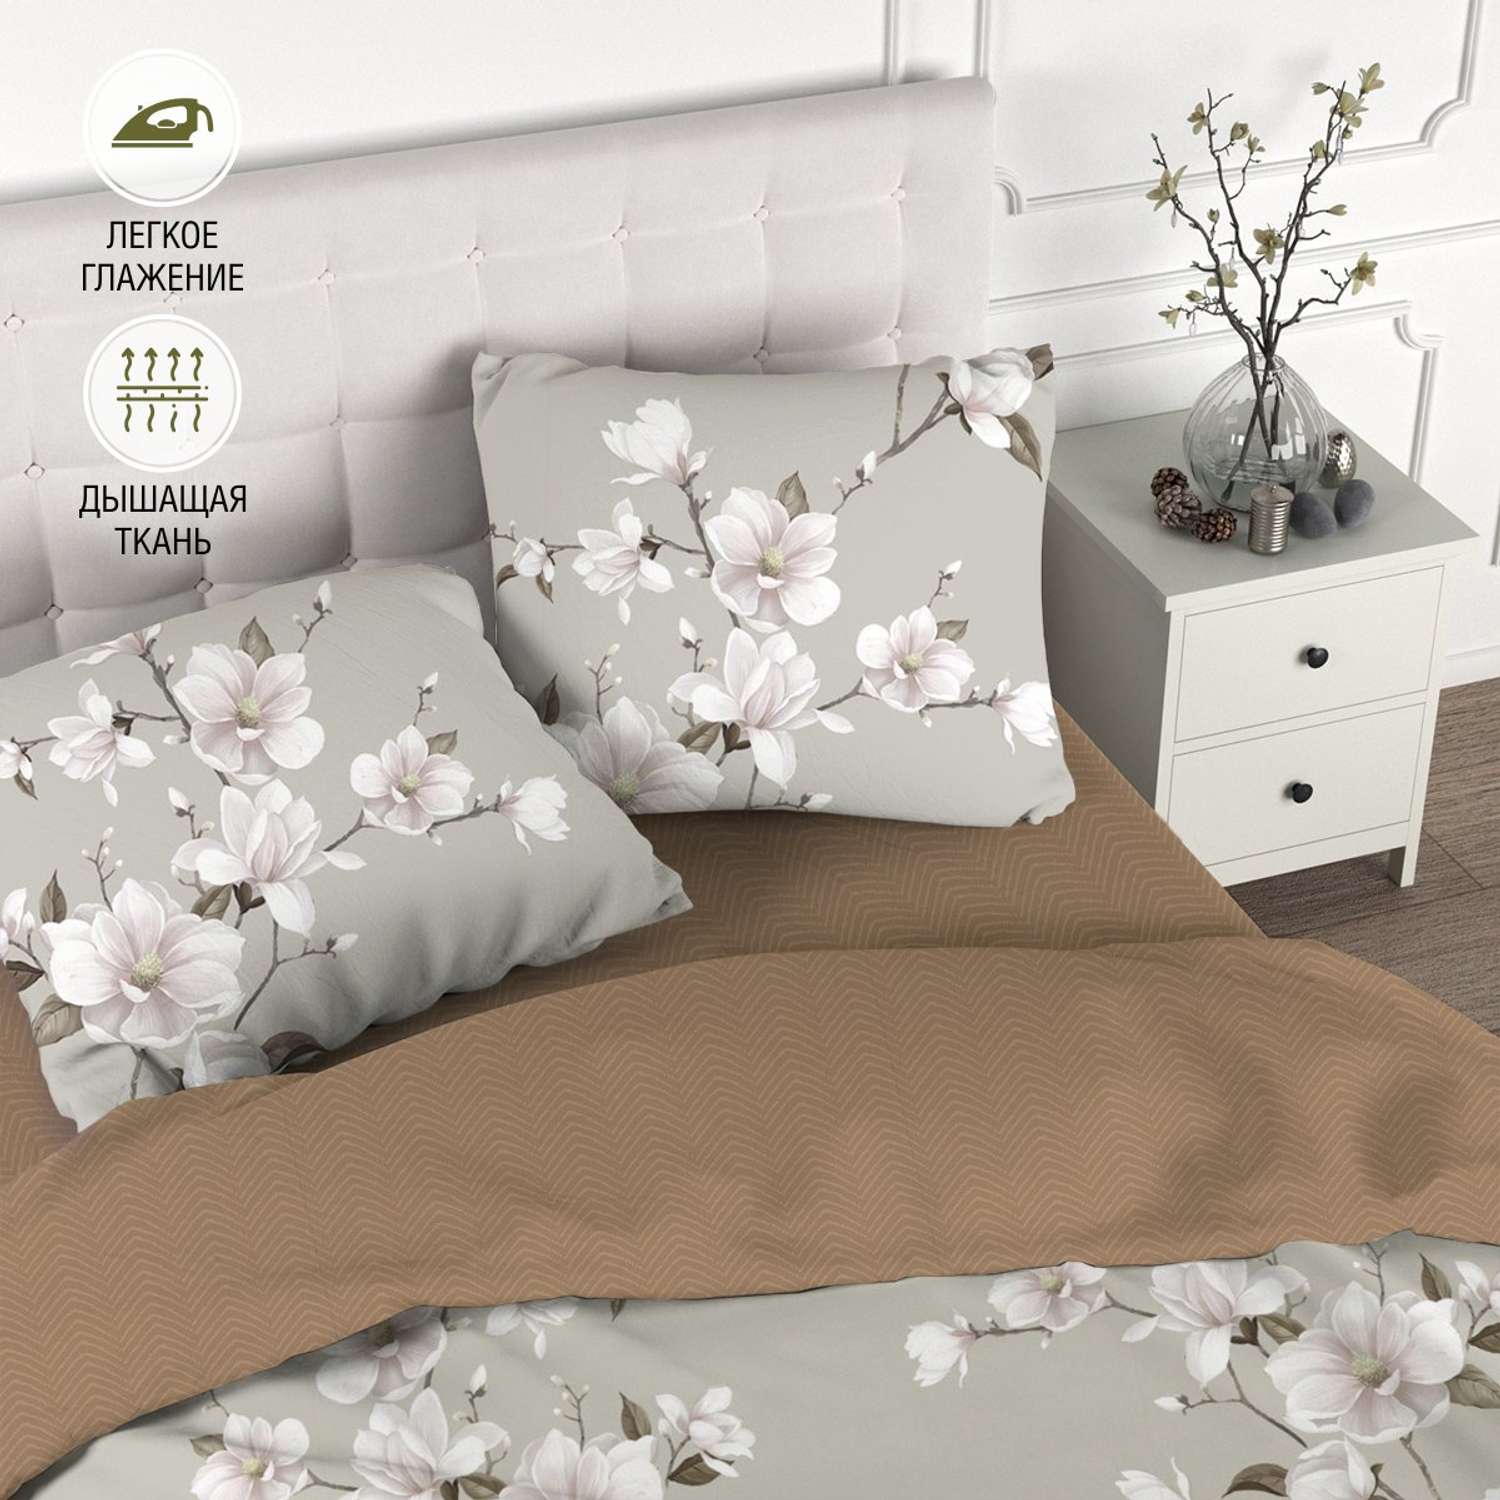 Комплект постельного белья для SNOFF Канела евро сатин рис.6084-1+6084а-1 - фото 1